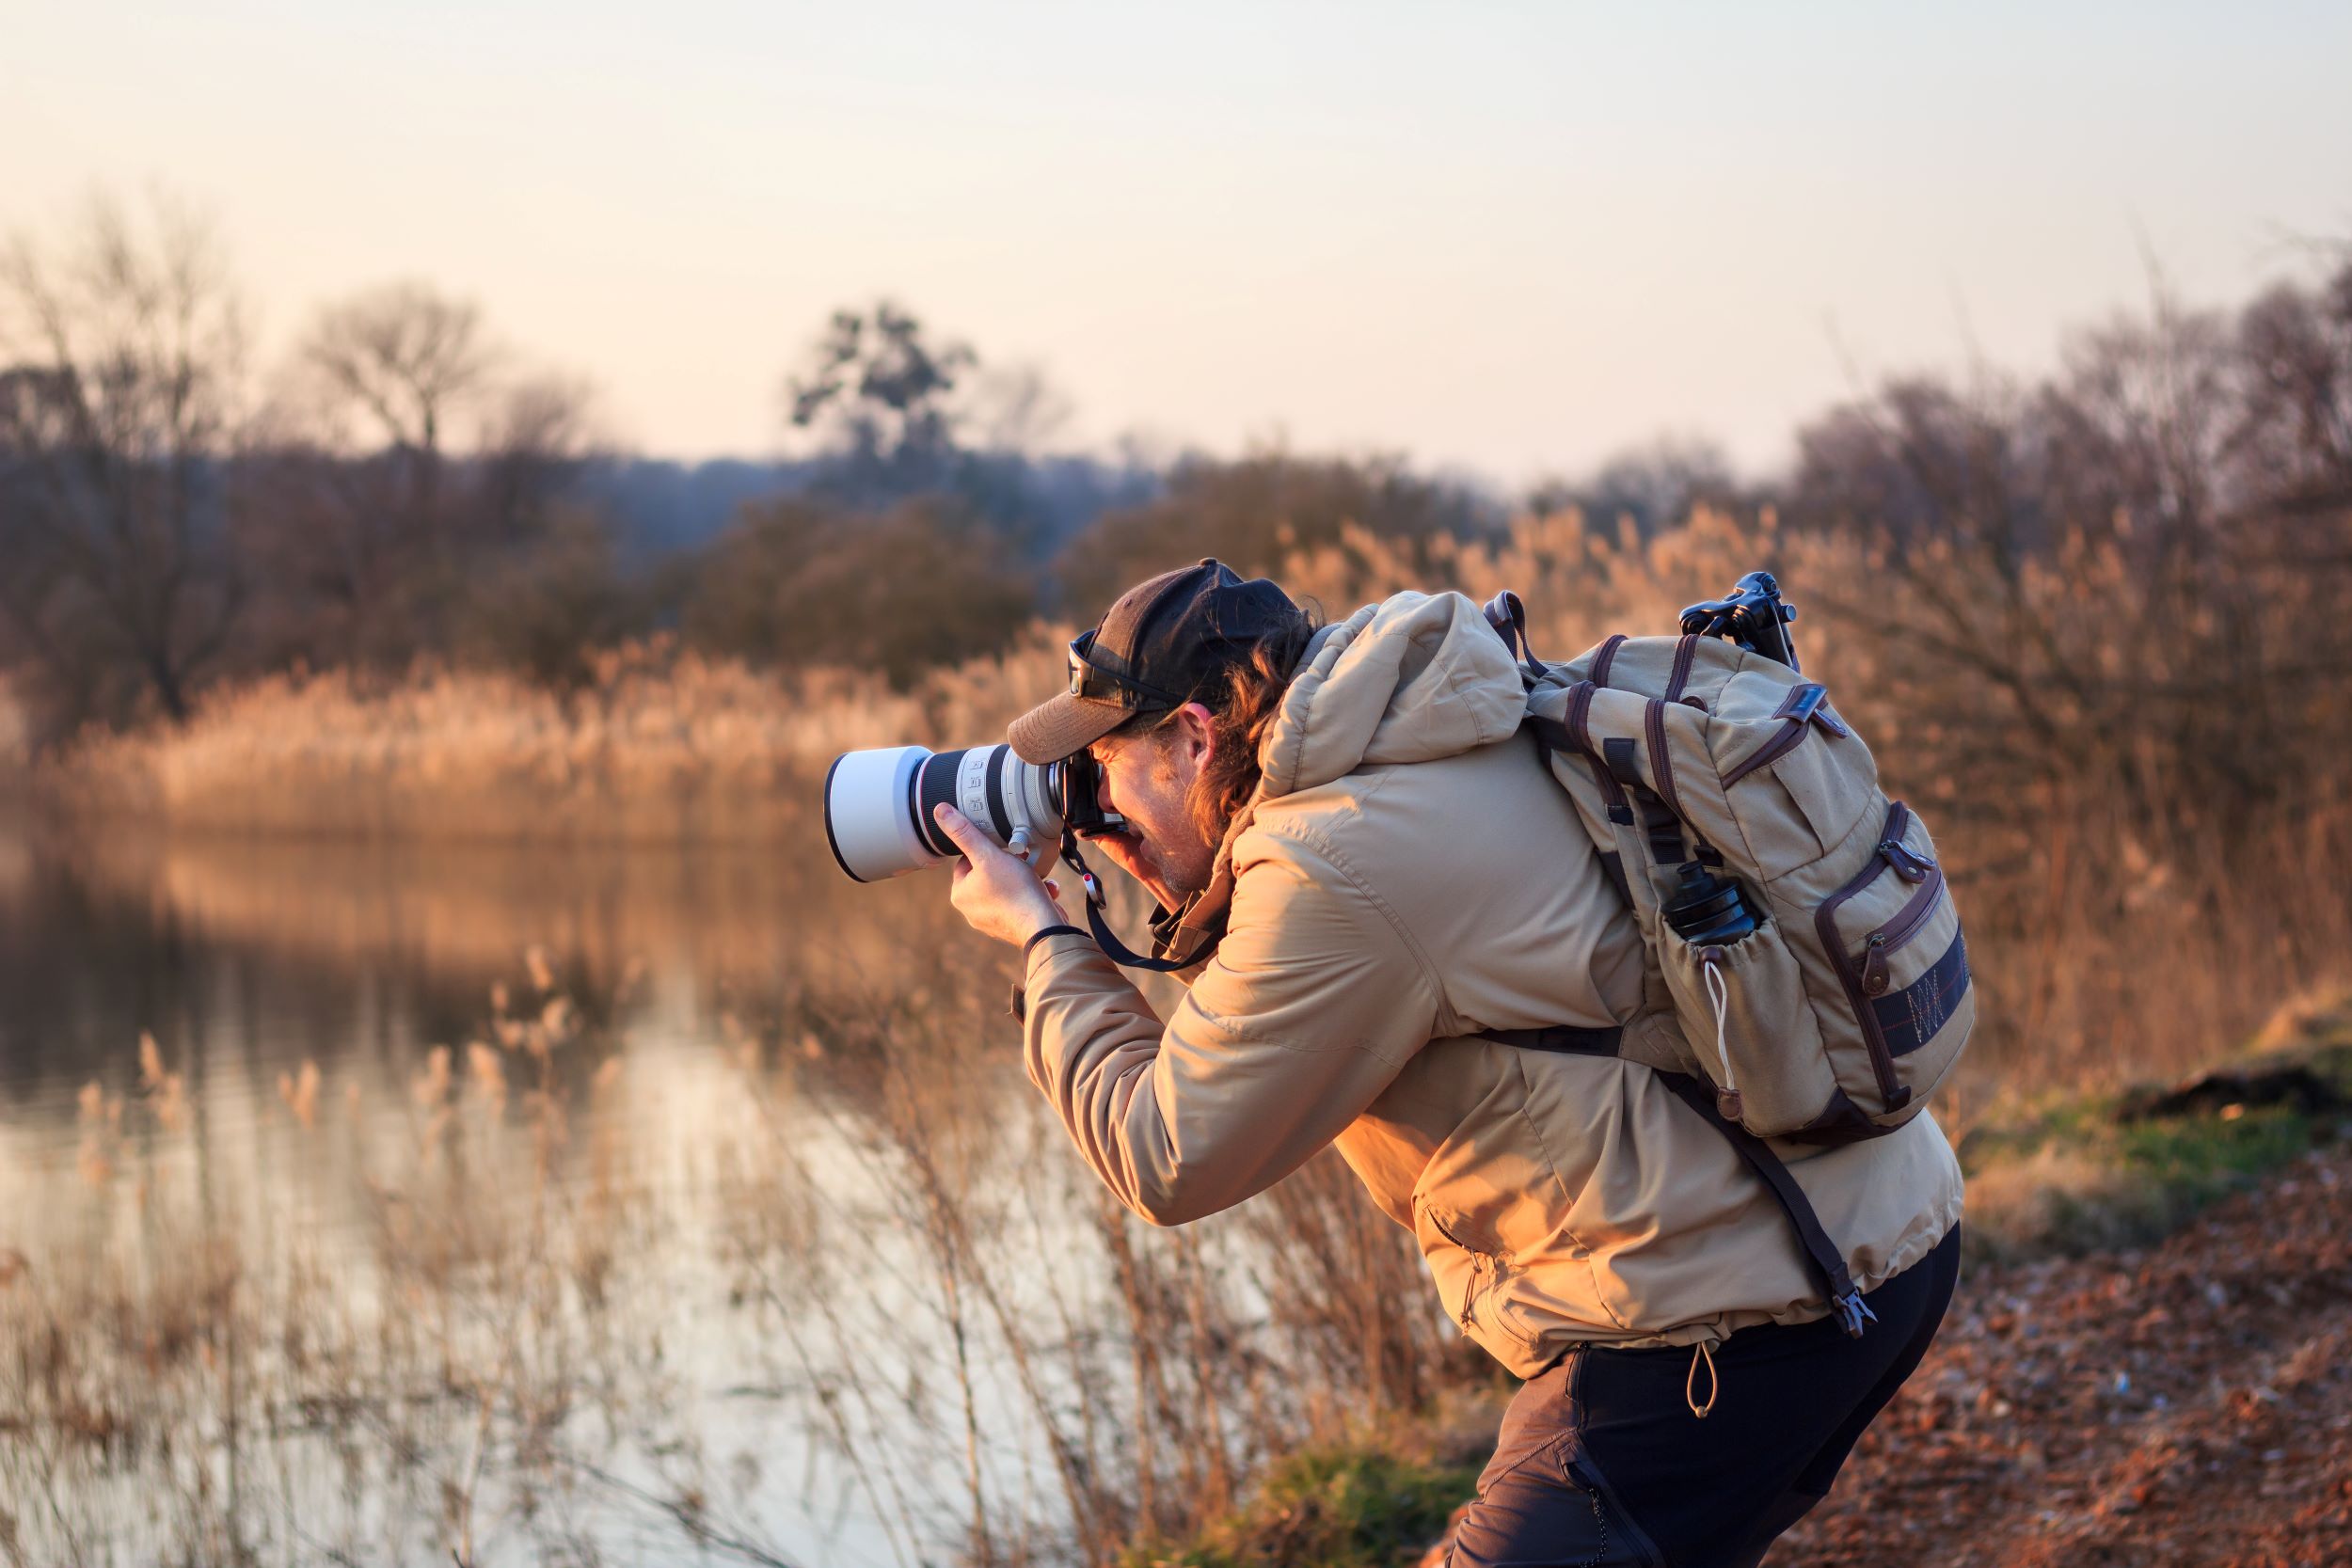 A birdwatcher photographing a bird at sunset.